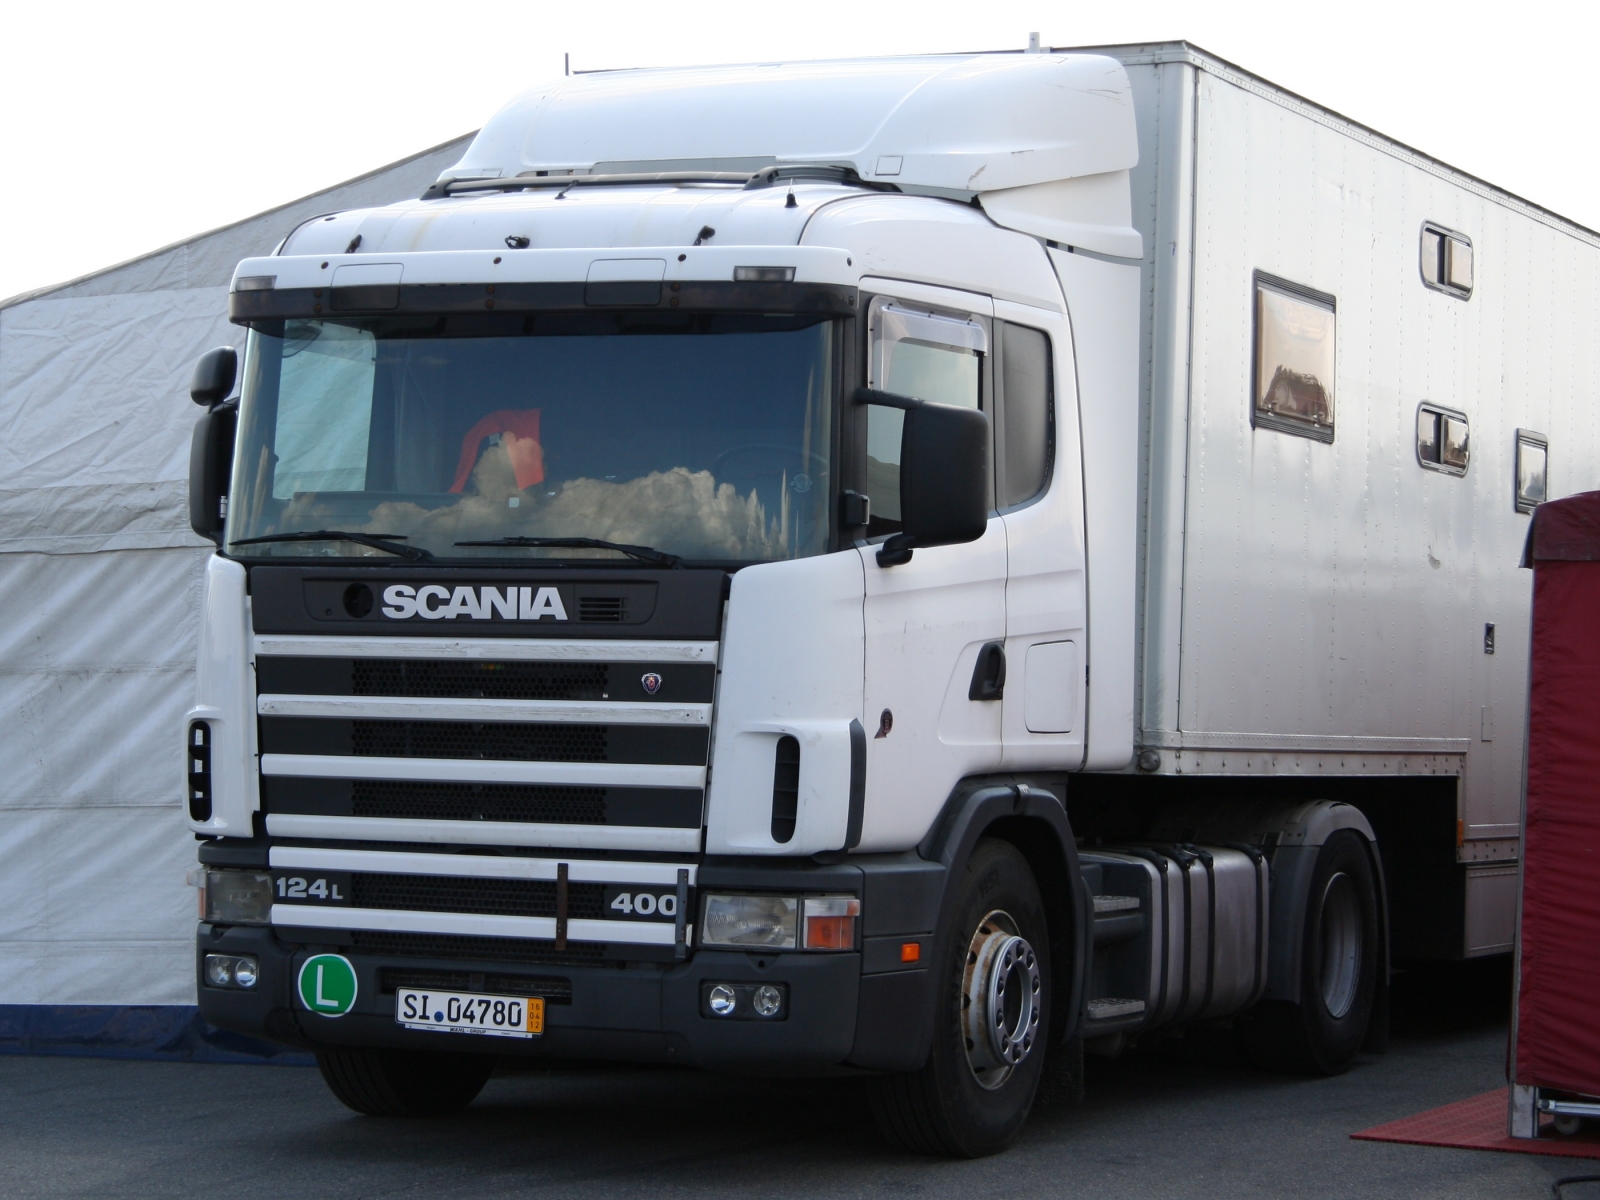 Scania 124 L 400